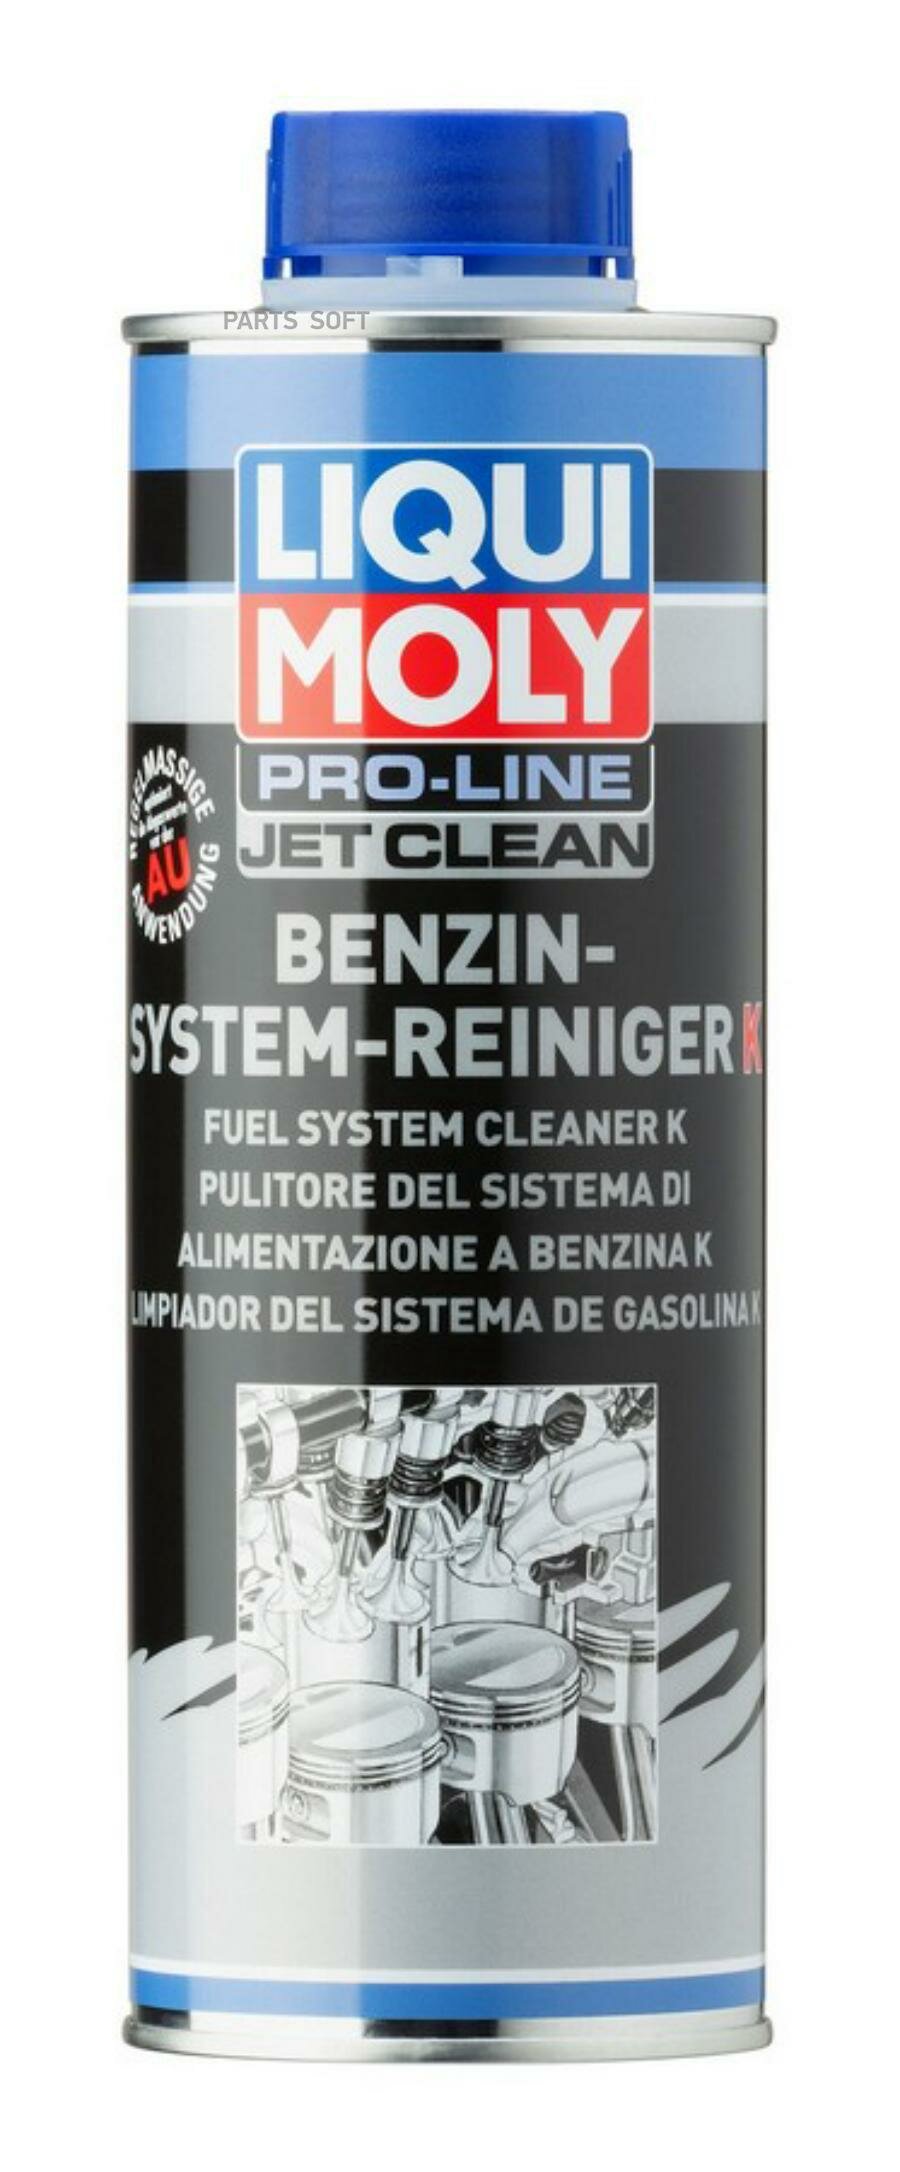 Жидкость промывочная LIQUI MOLY для топливной системы, бензин 0.5л. LIQUI MOLY / арт. 5152 - (1 шт)